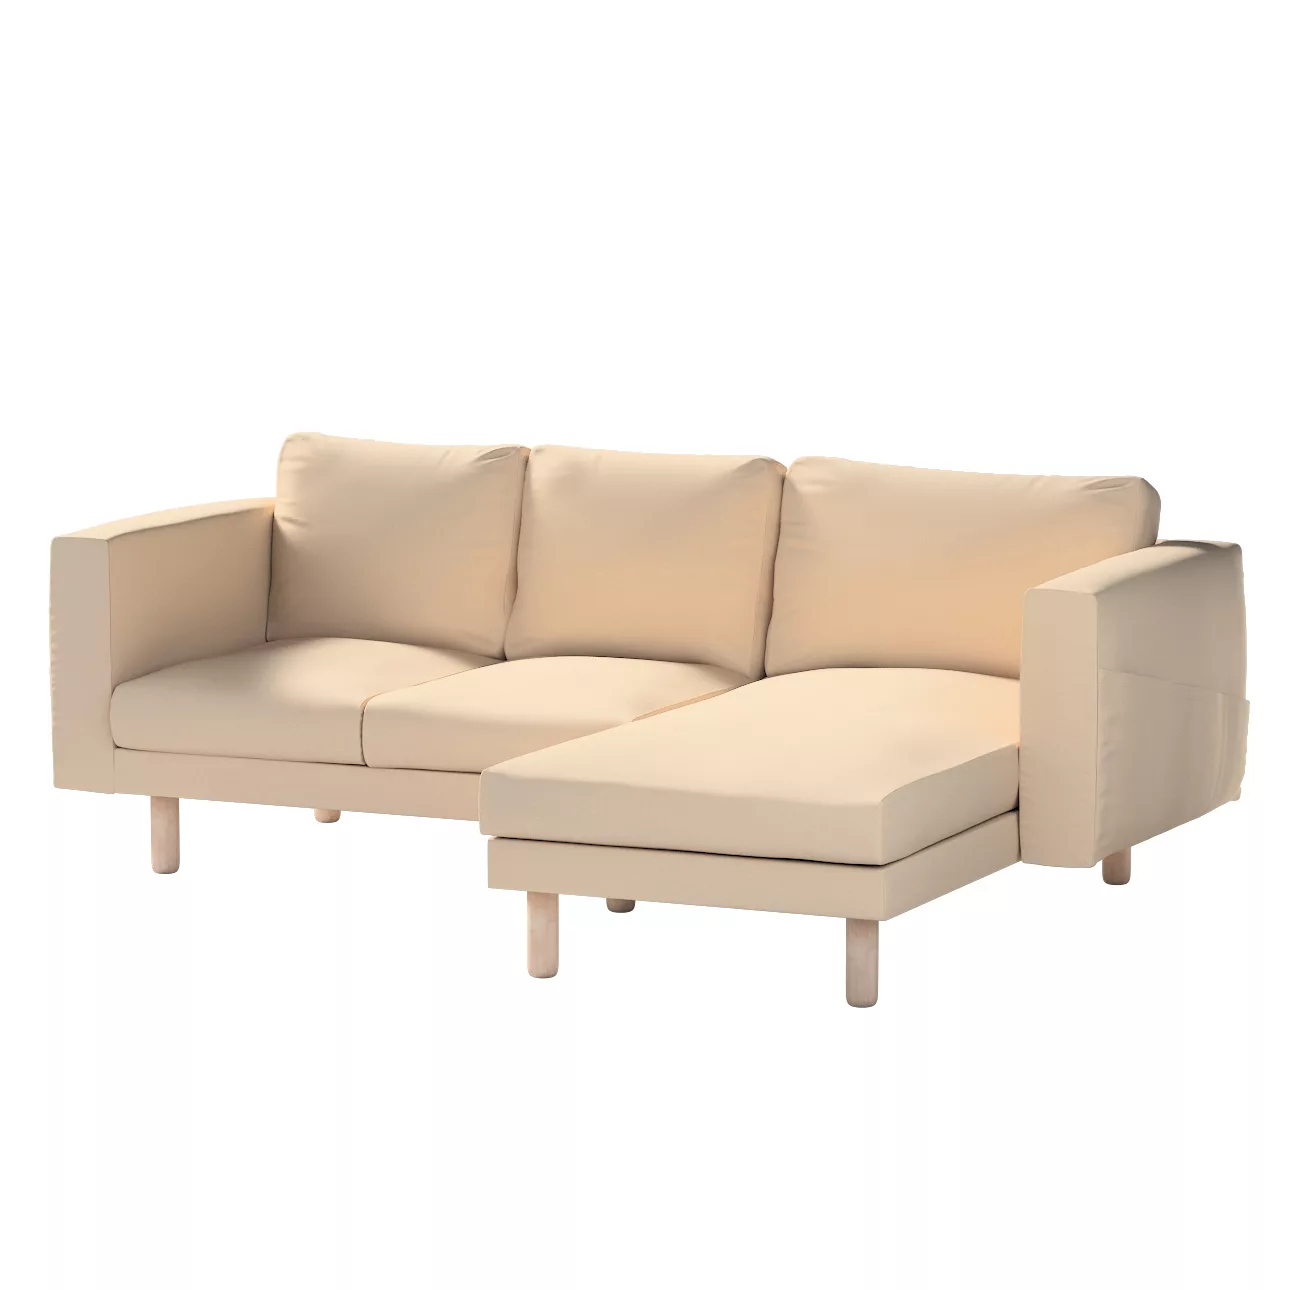 Bezug für Norsborg 3-Sitzer Sofa mit Recamiere, creme-beige, Norsborg Bezug günstig online kaufen